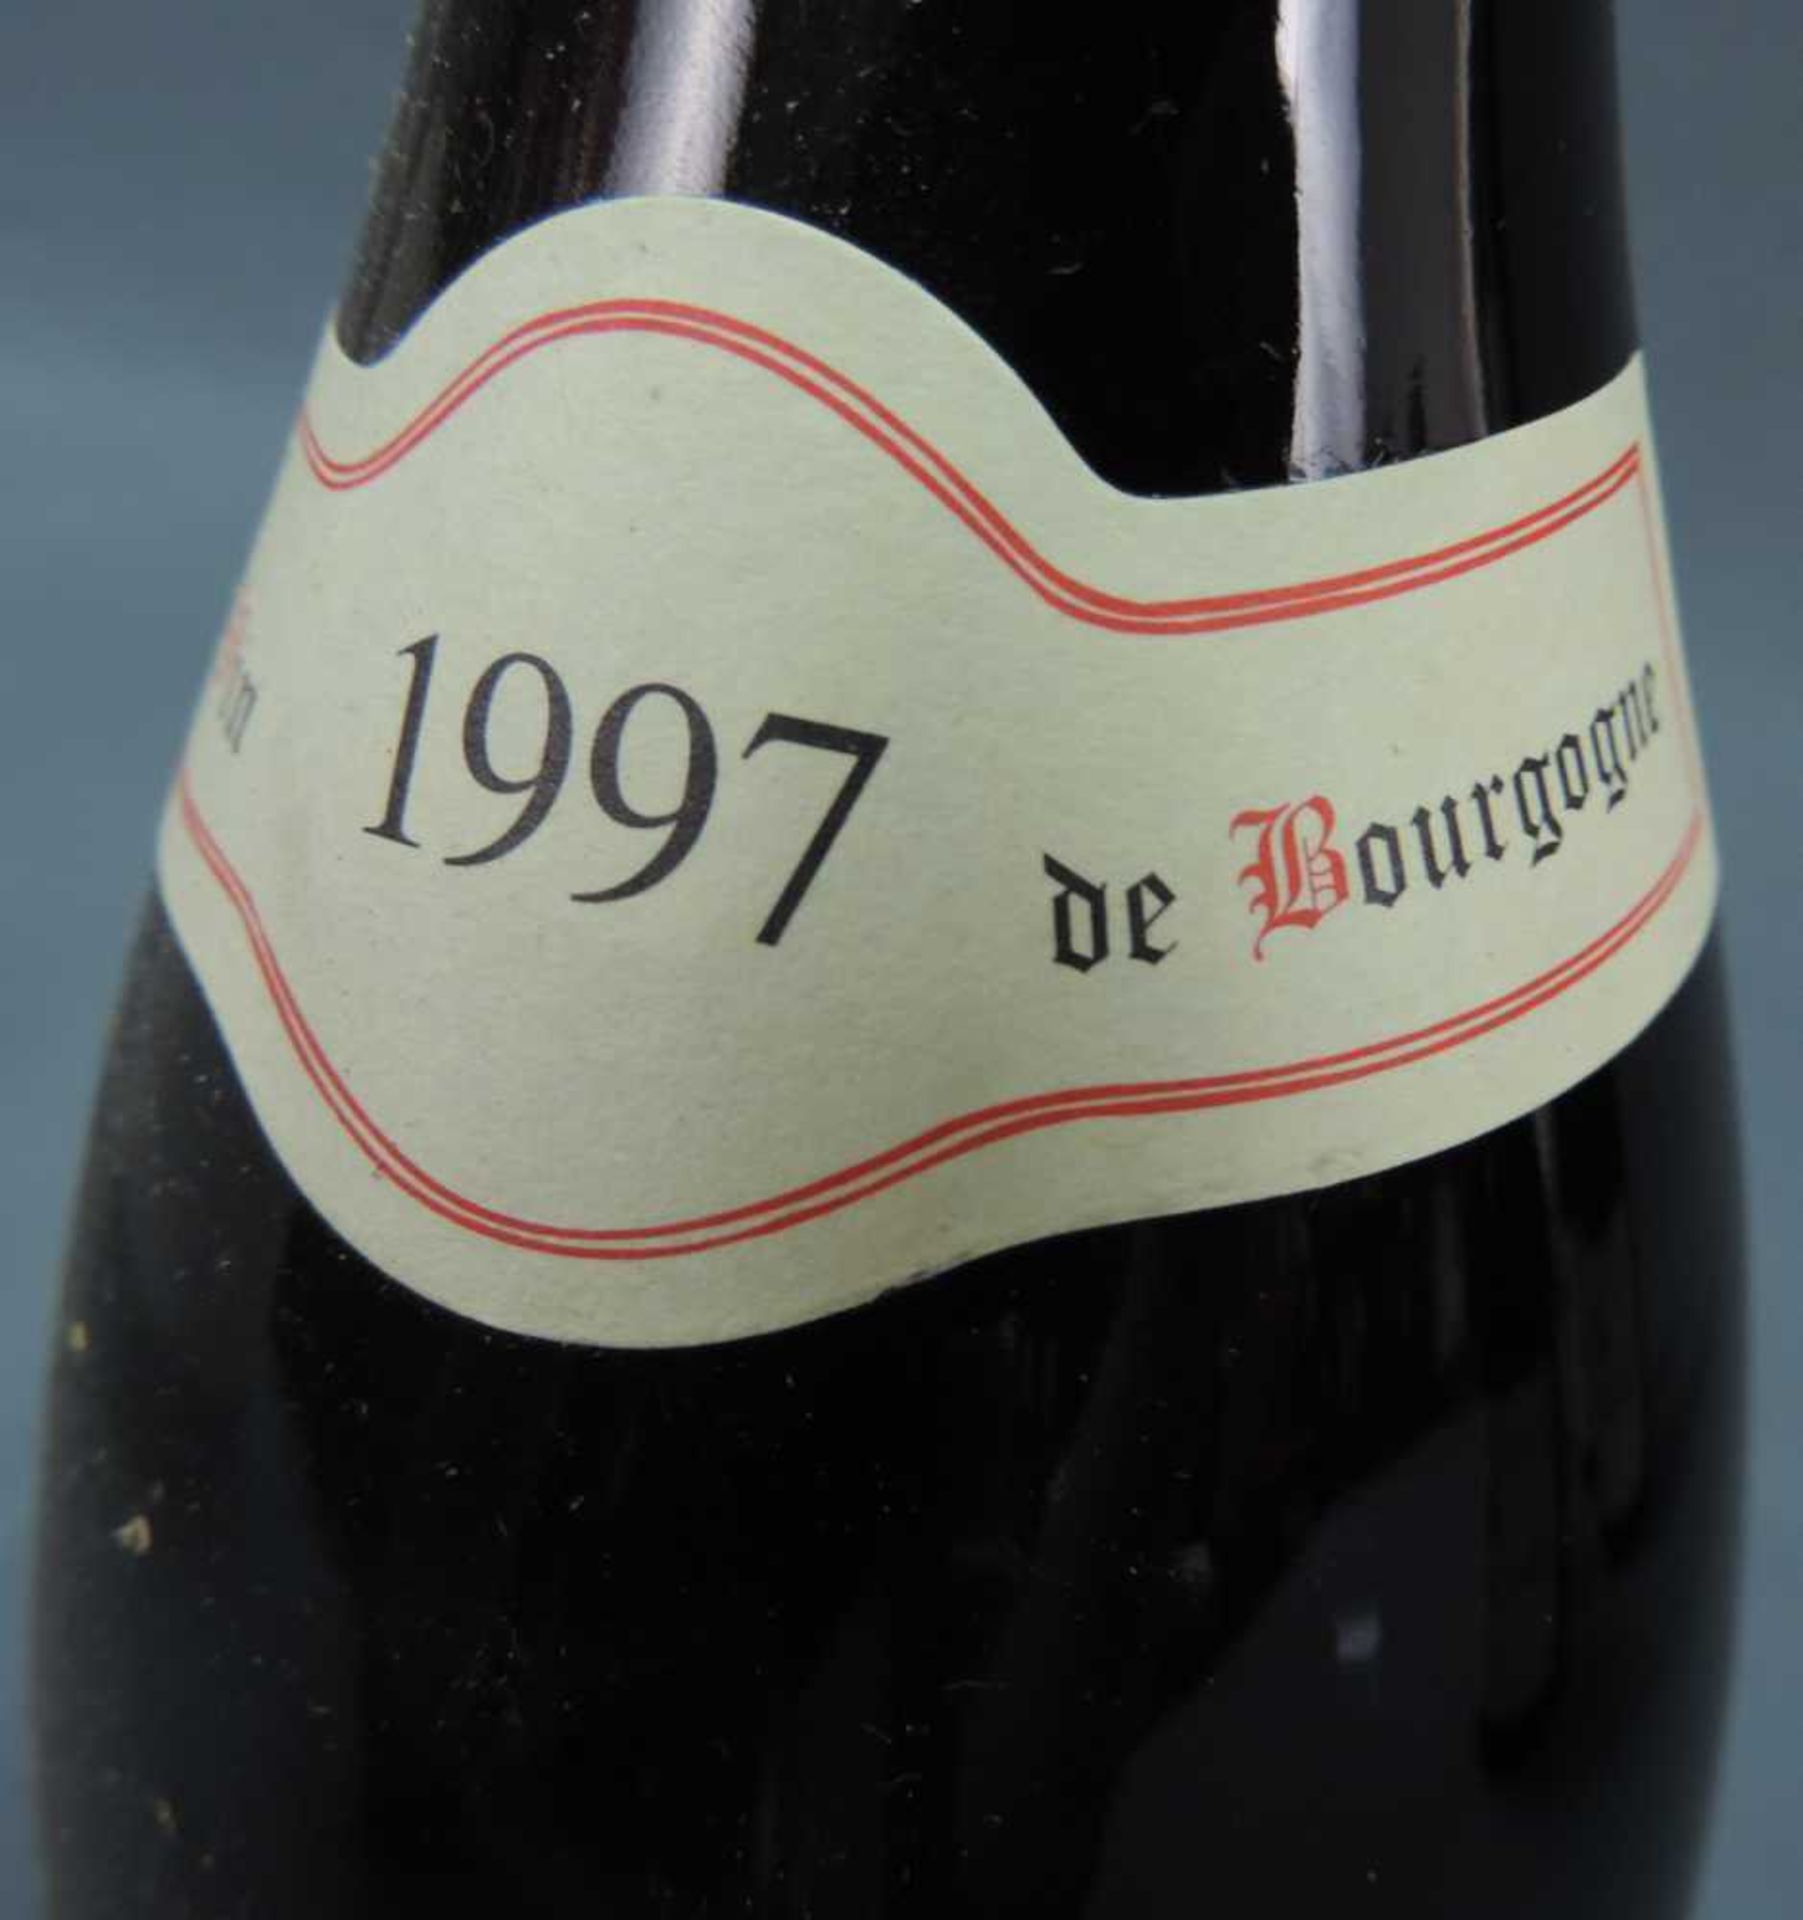 1997 Domaine Prieur - Brunet, Volnay Santenots Premier Cru, France. 5 Flaschen, 750 ml, Alc., 13, - Image 5 of 6